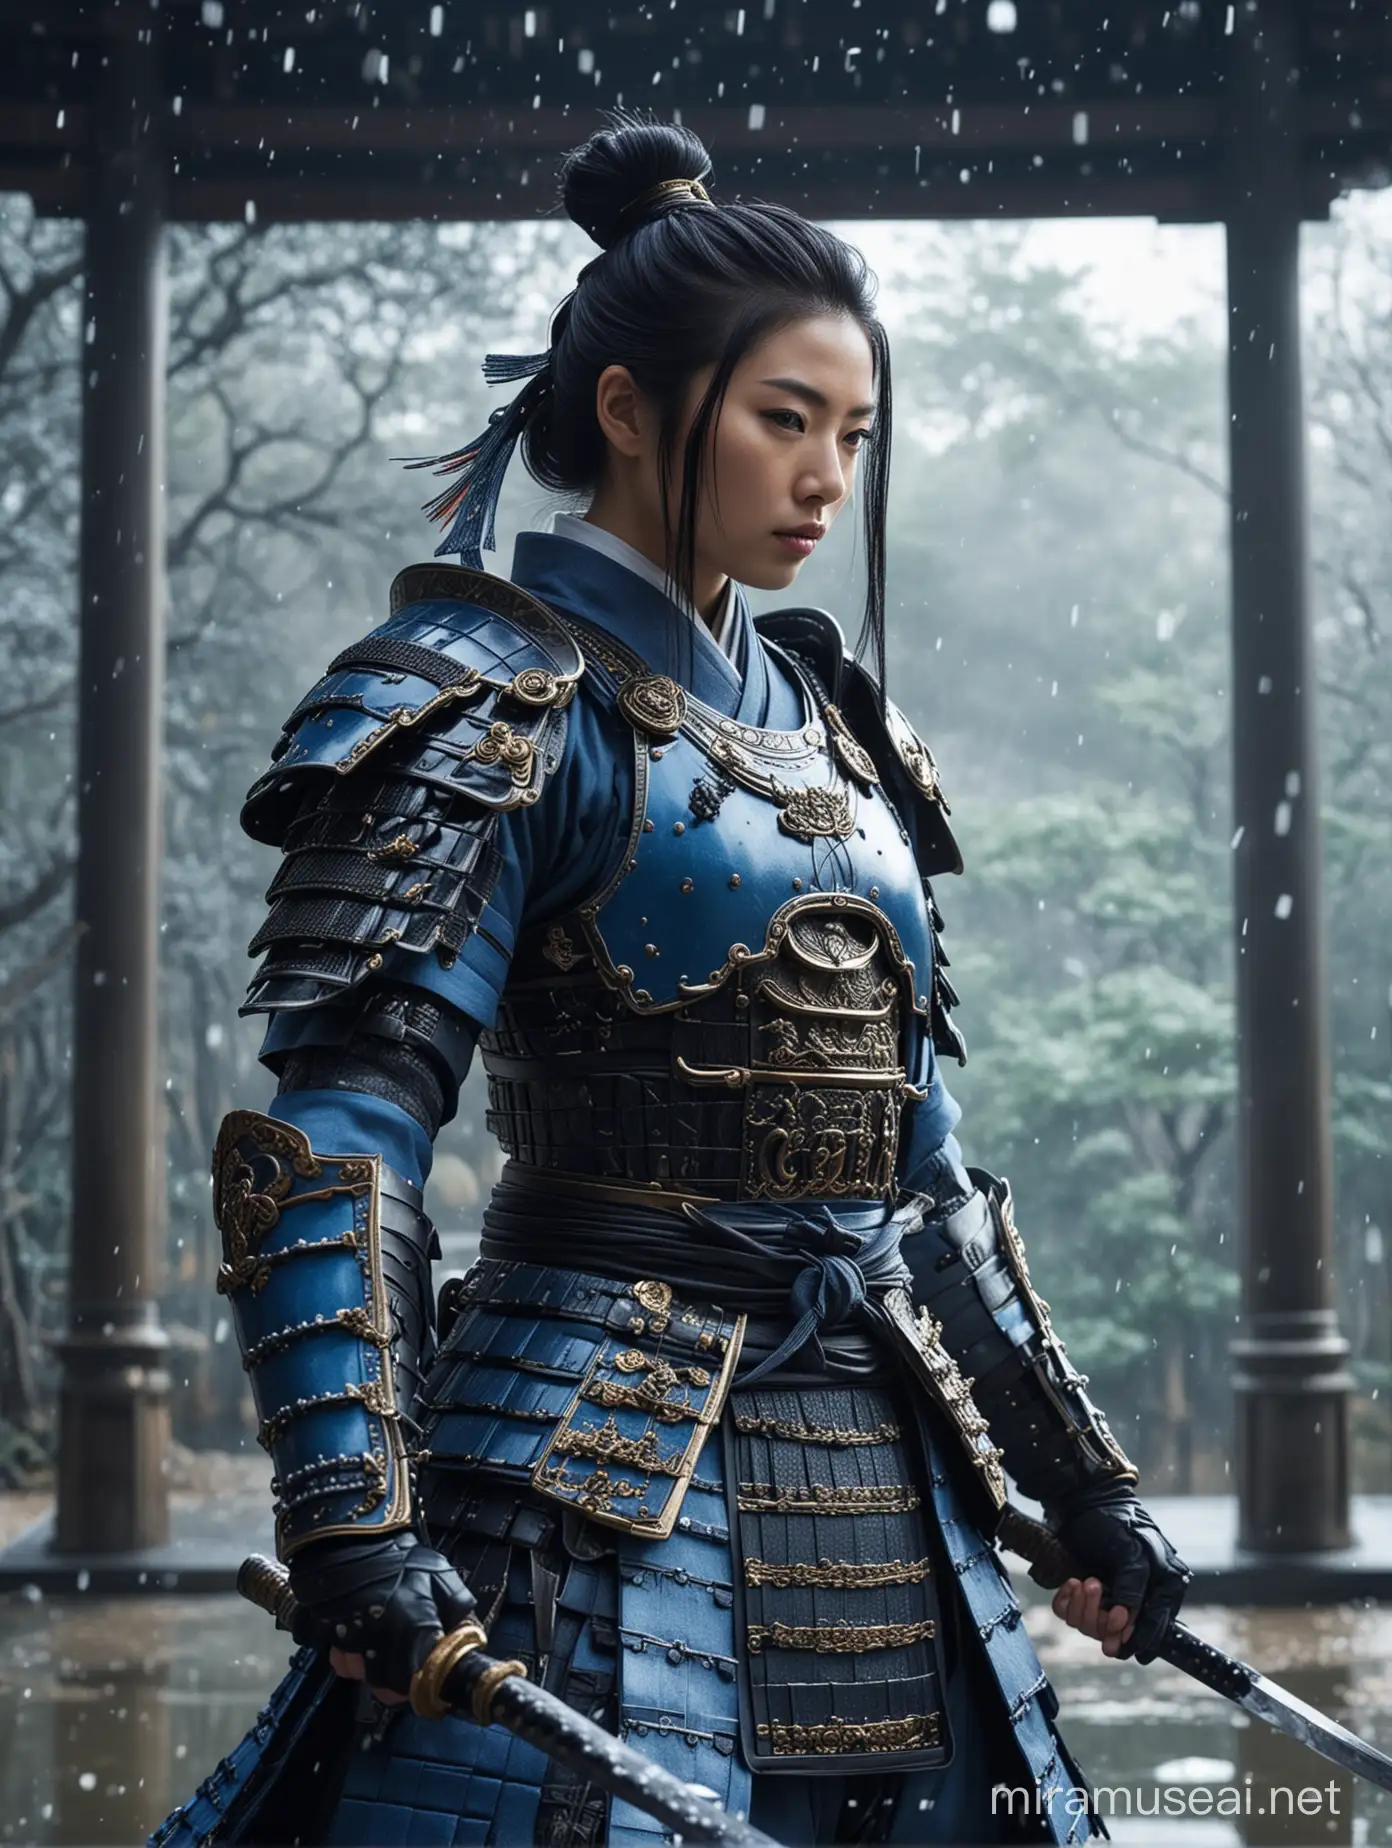 Elegant Female Samurai Warrior in Blue Armor at Peaceful Japanese Temple